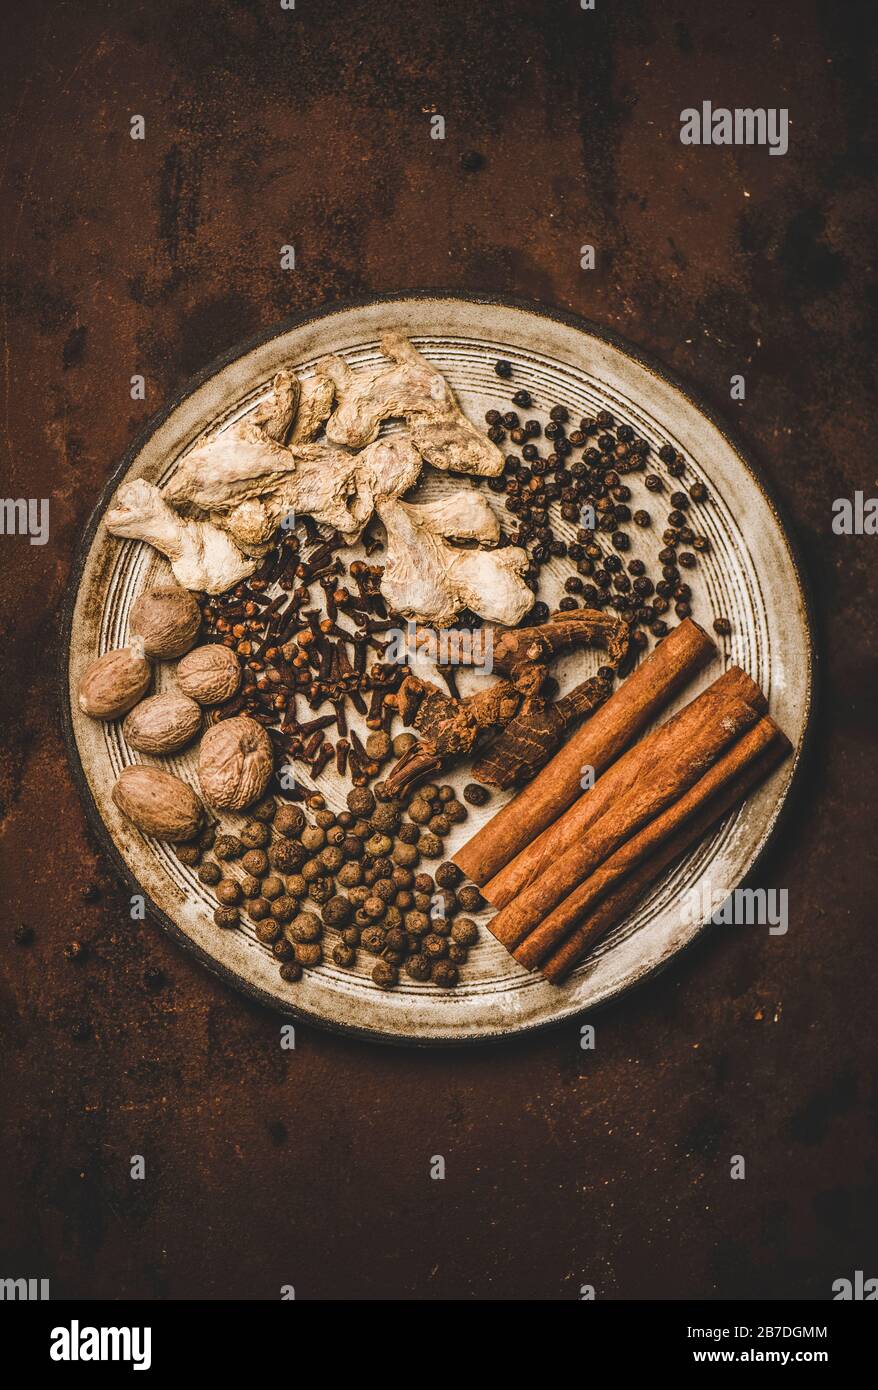 Türkischer traditioneller Seven Spice Yedi Bahar Mix zum Kochen. Flat-lay aus schwarzem Pfeffer, Ingwer, Nelken, Muskatnuss, Zimt, Allwürze und alpinienwurzel in w Stockfoto